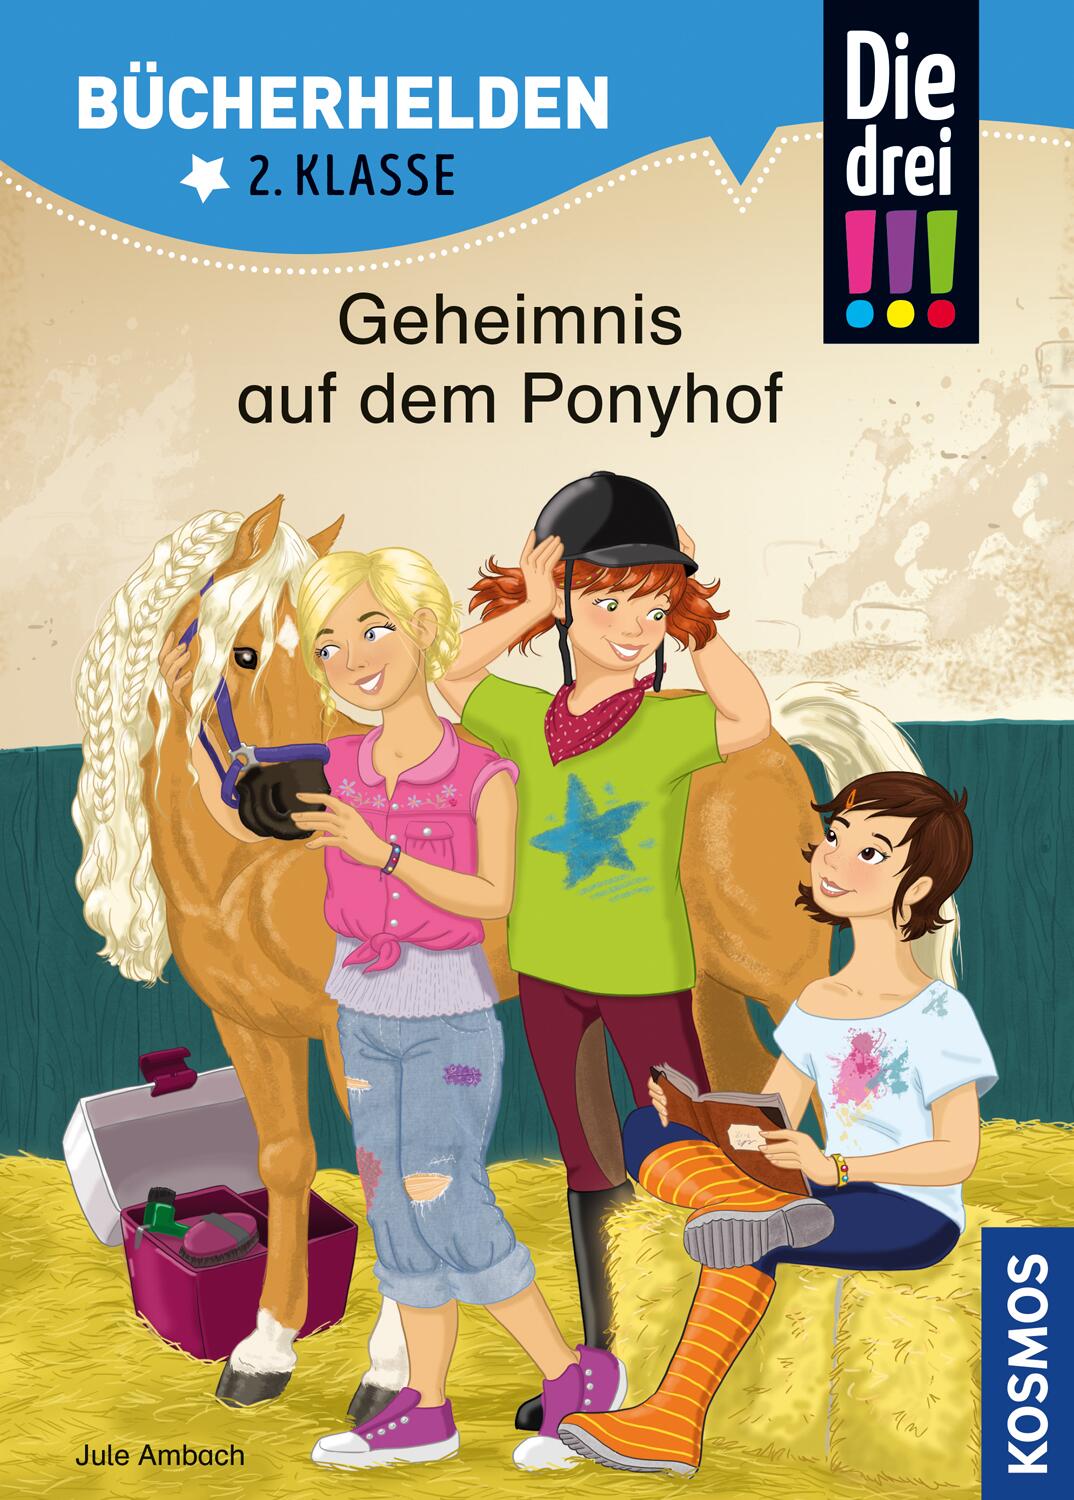 Bücherhelden 2. Klasse: Geheimnis auf dem Ponyhof